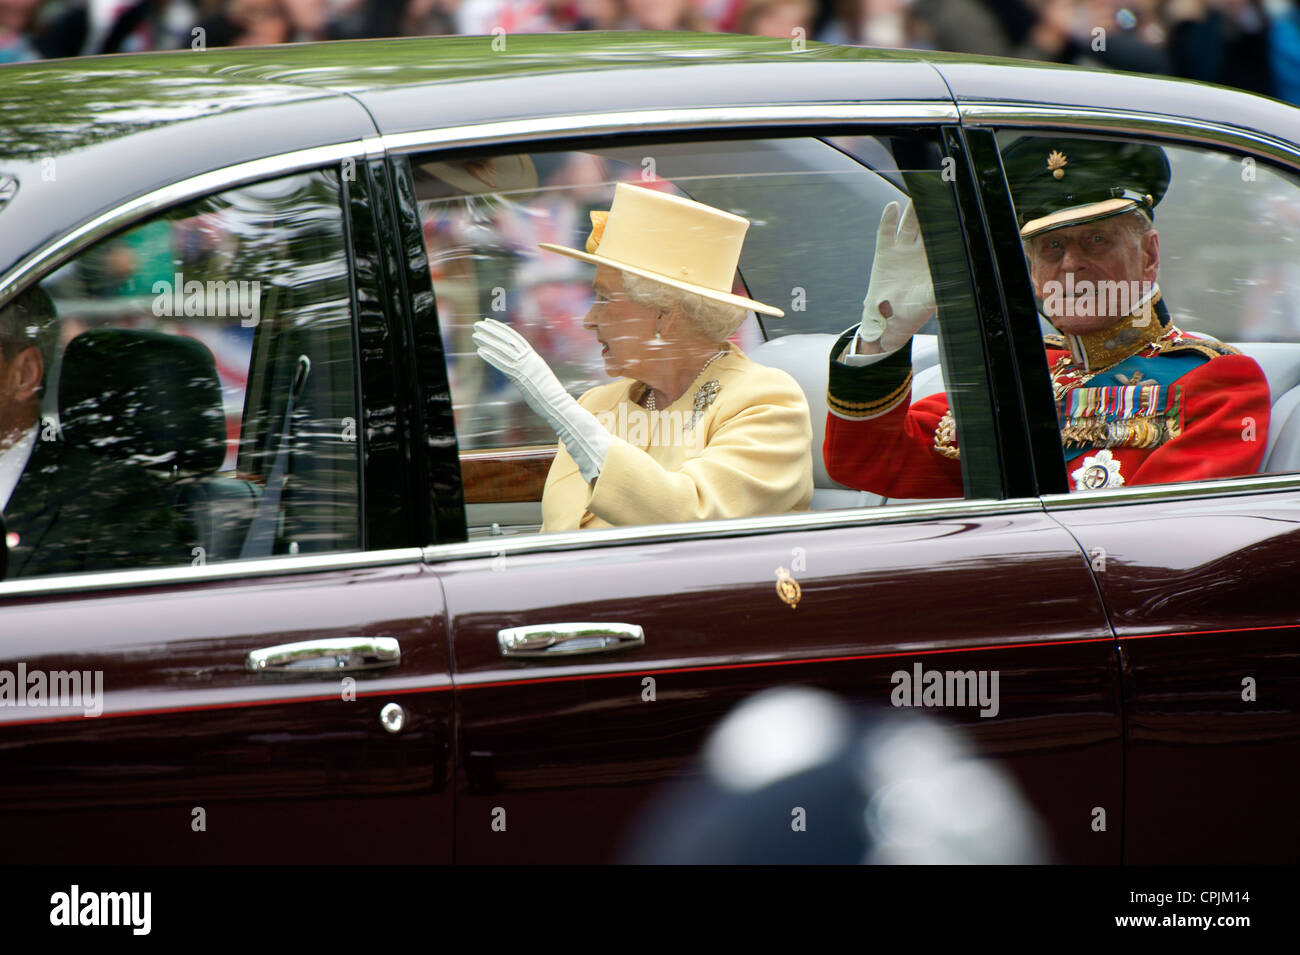 La reine Elizabeth II et le Prince Philip, duc d'Édimbourg ride dans la limousine royal au mariage du Prince William. Banque D'Images